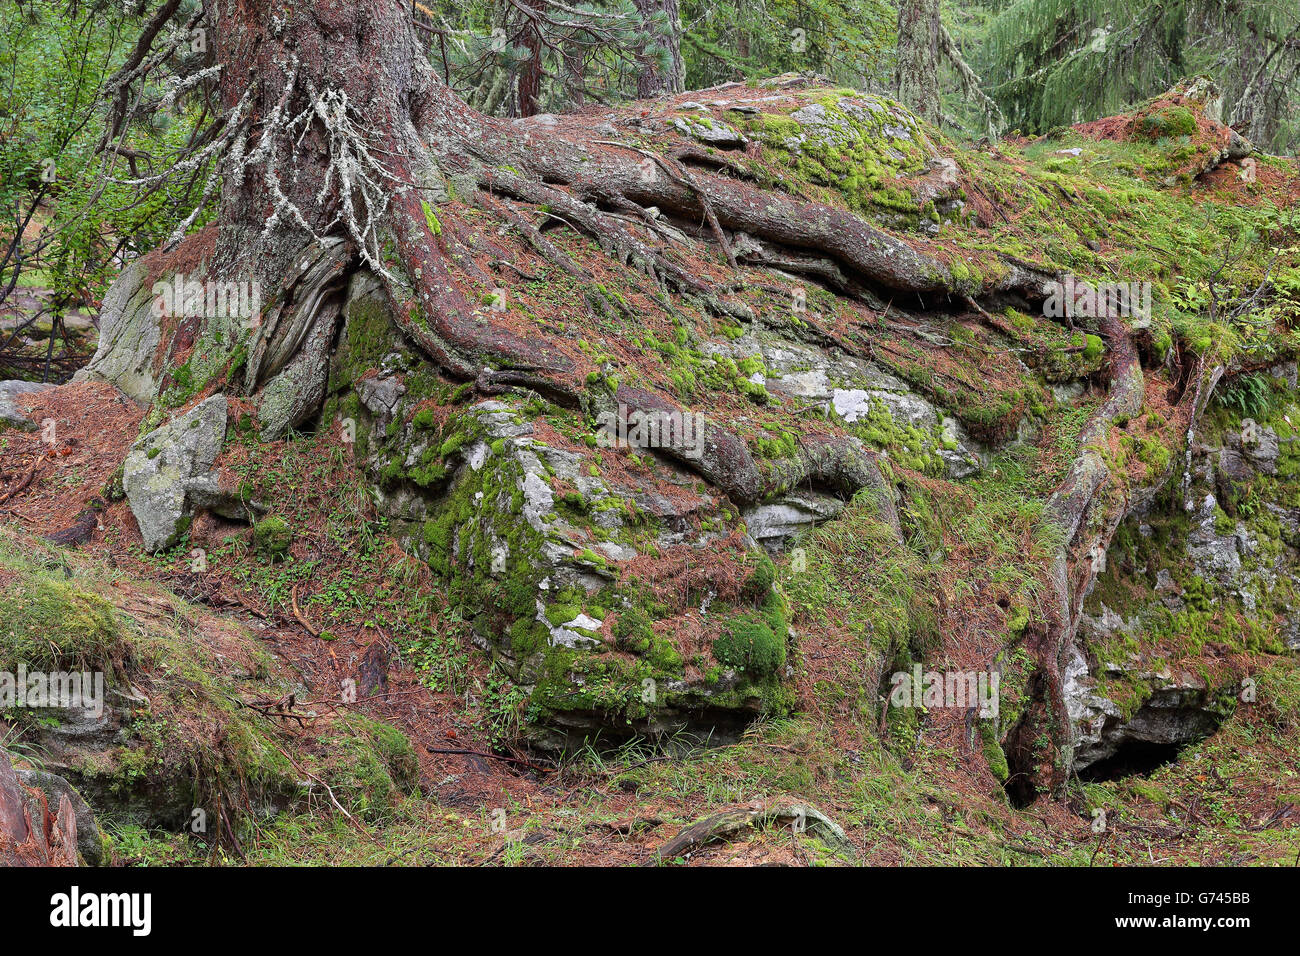 Swiss stone pine, Valais, Switzerland (Pinus cembra) Stock Photo